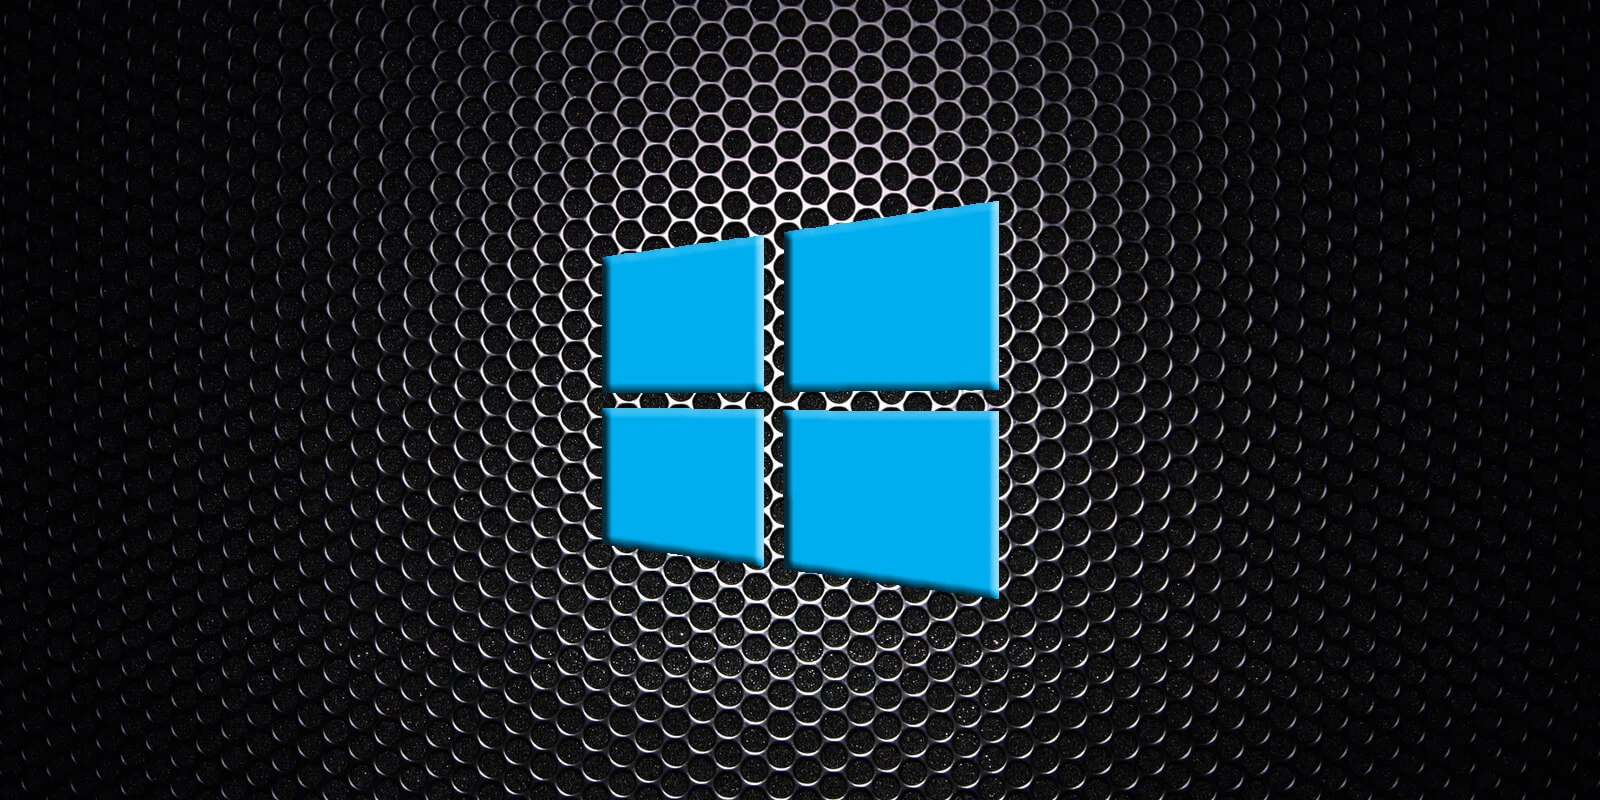 How to Reset Pc Windows 10?